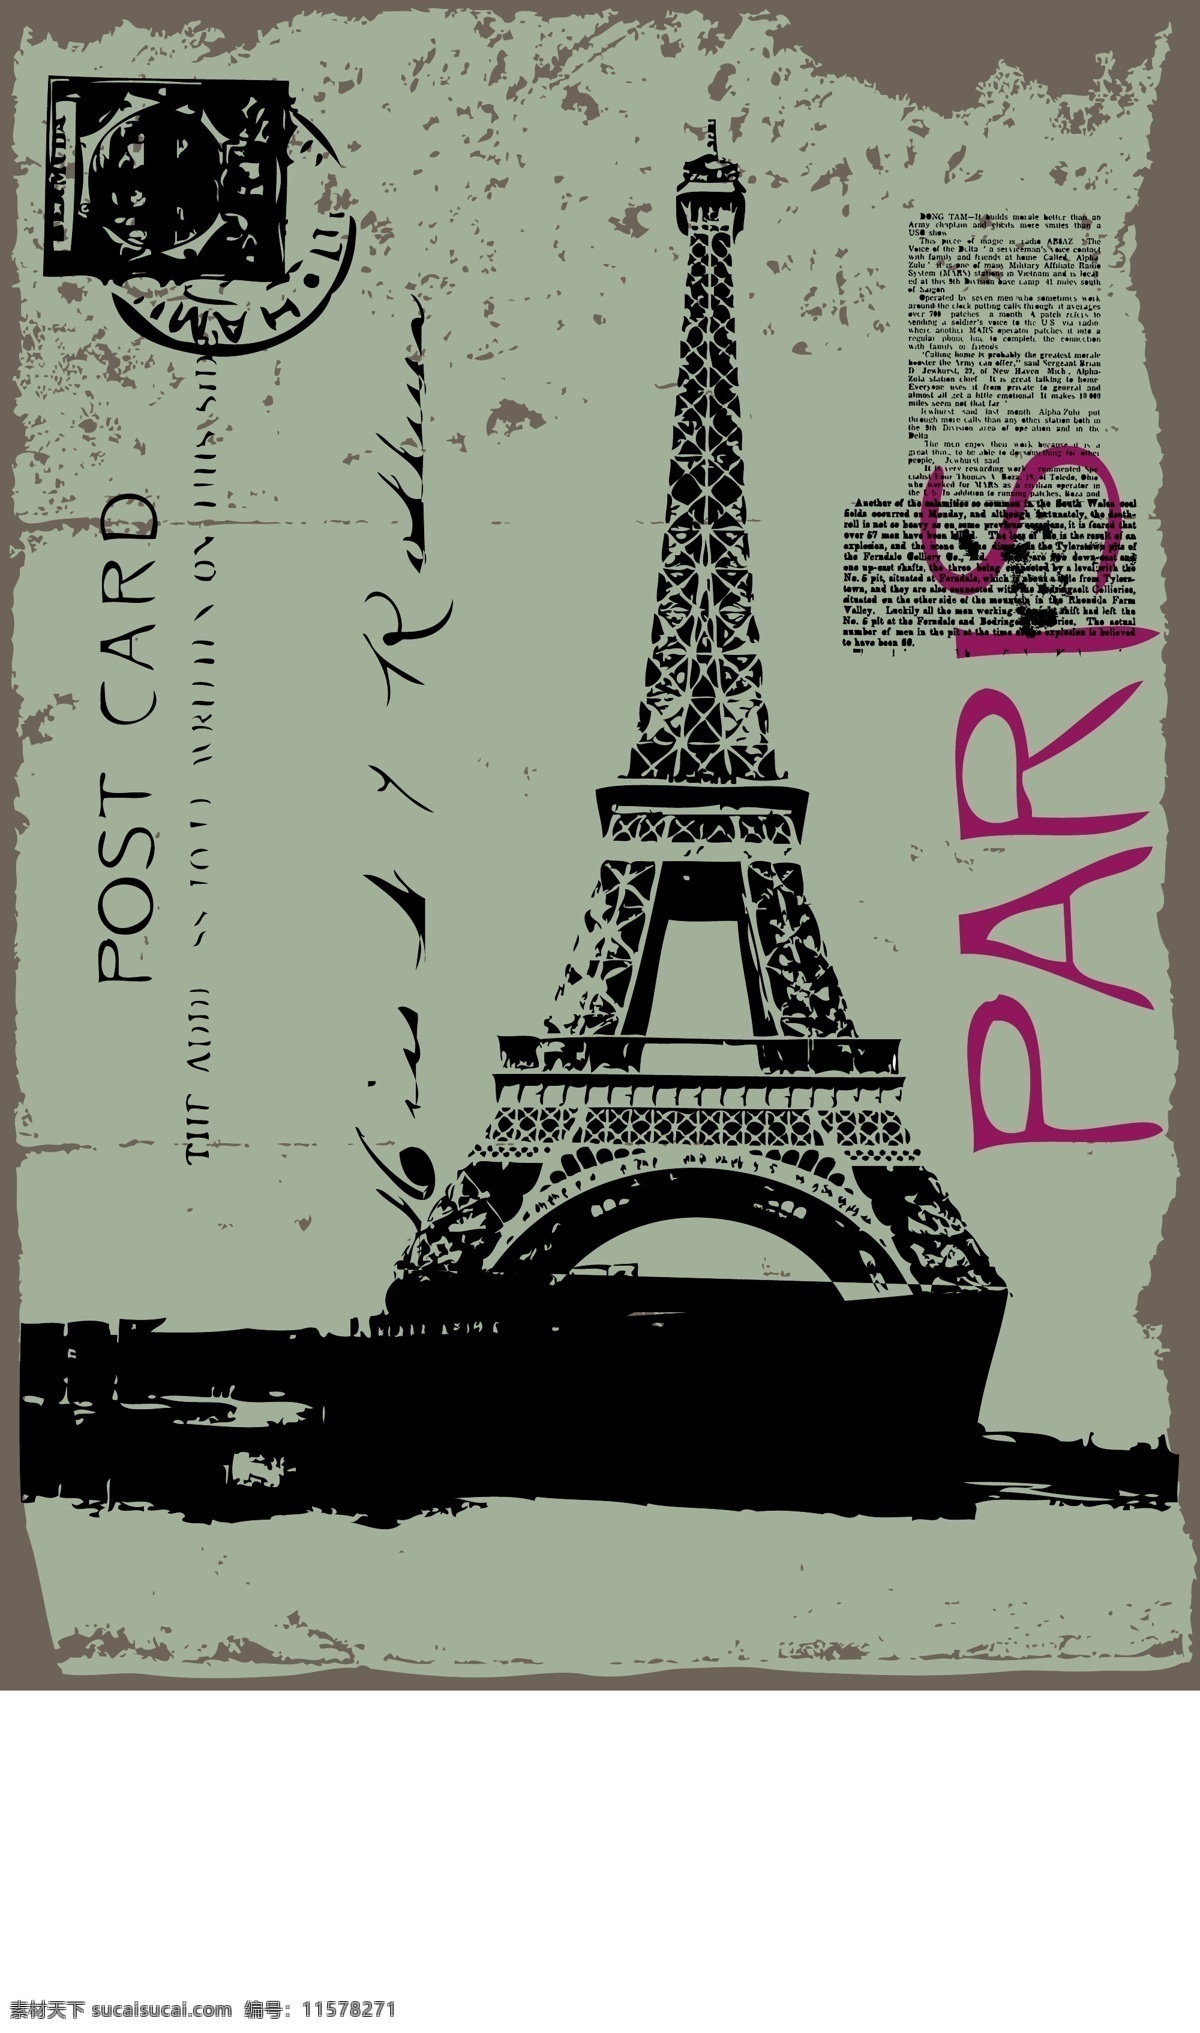 艾菲尔铁塔 法国 巴黎 信纸 邮戳 破旧 矢量 城市建筑 建筑家居